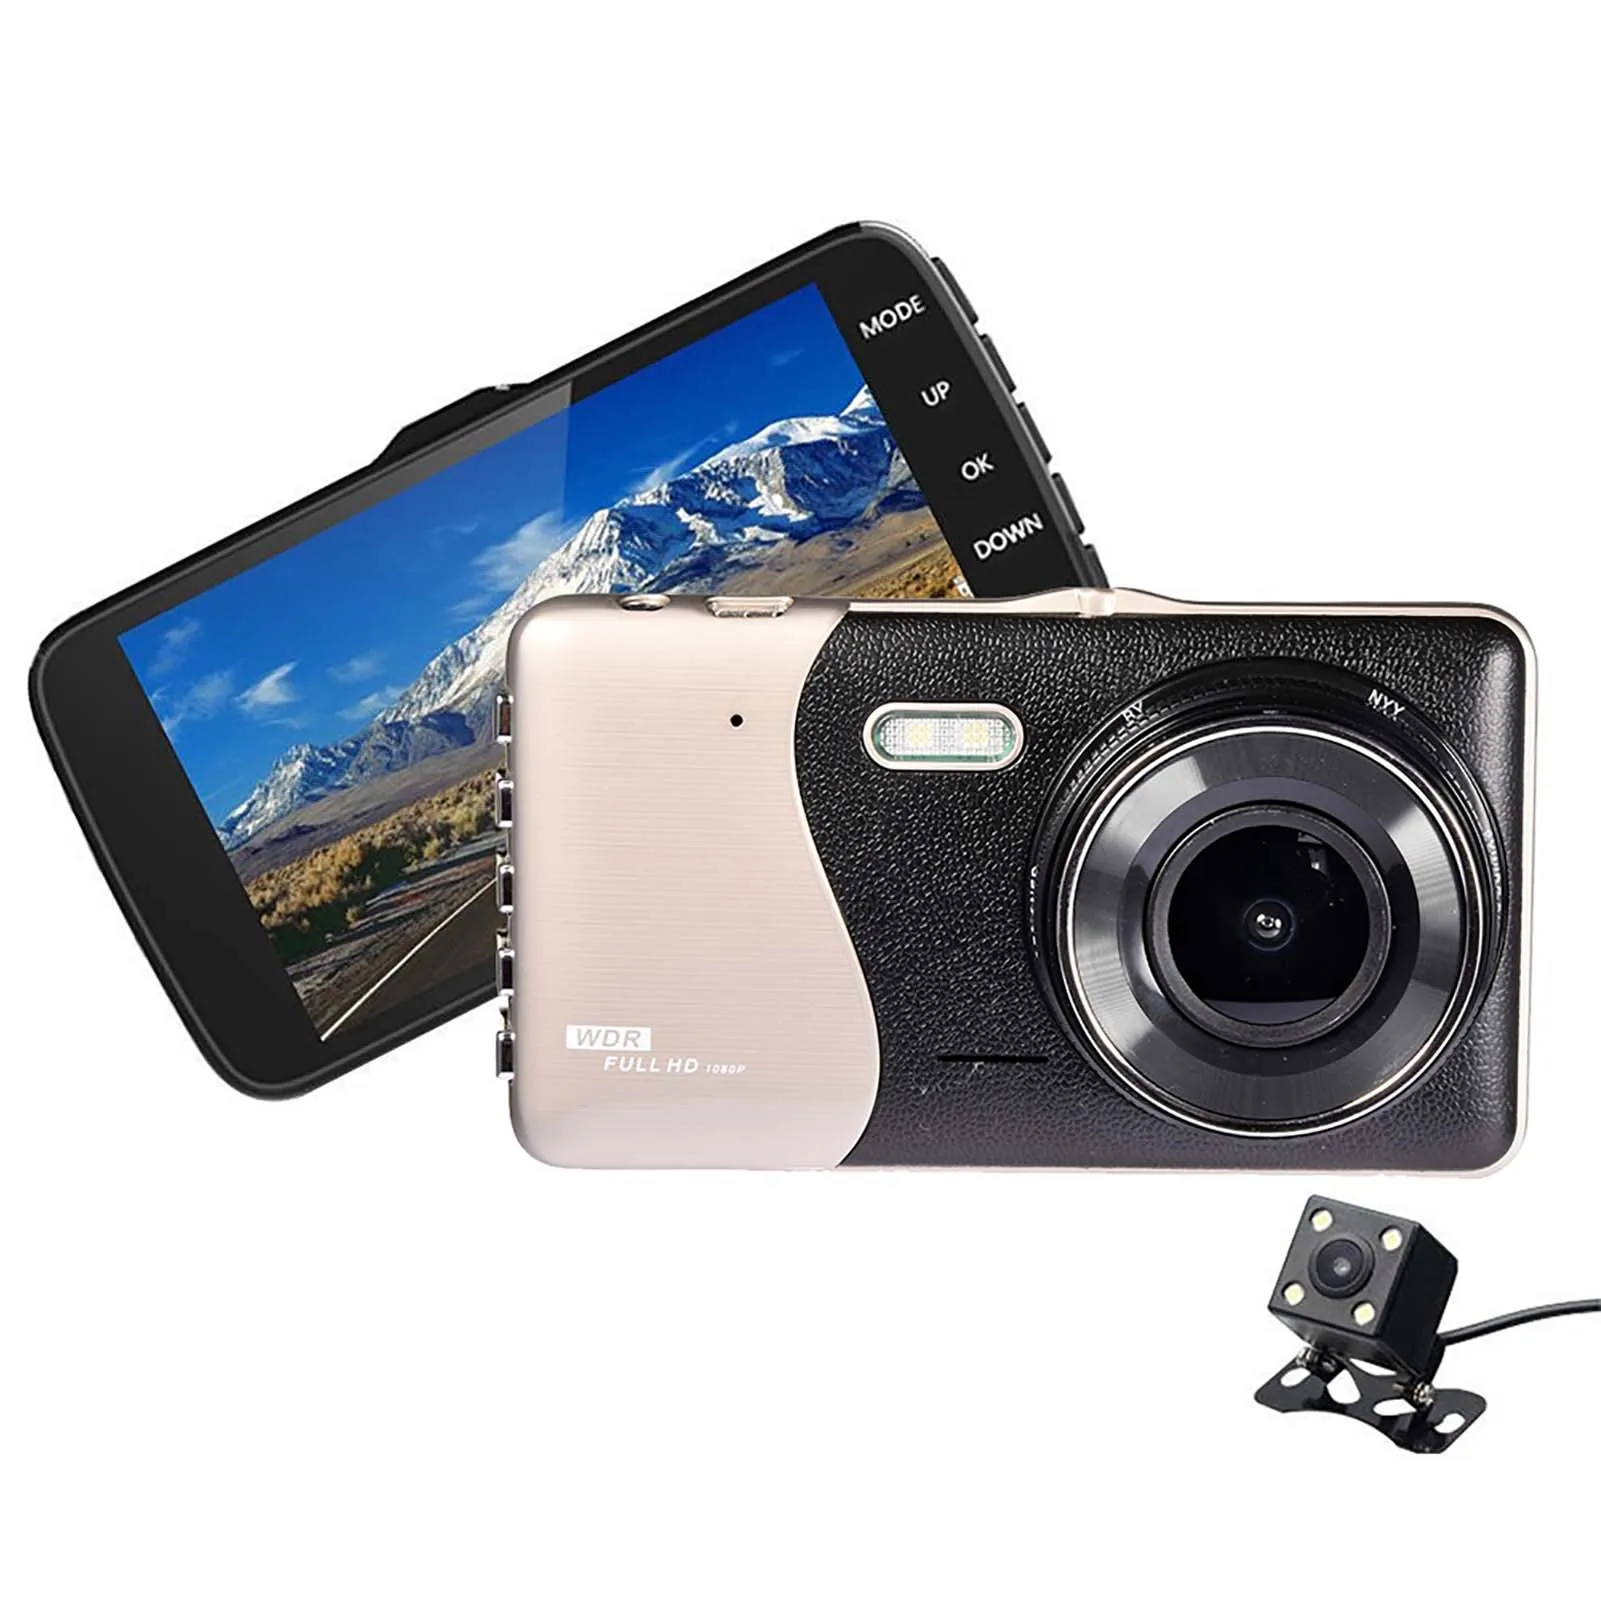 4 Colių Brūkšnys Cam Dual Lens Car DVR Saugumo Kamera Full HD 1080P Naktinio Matymo Vaizdo įrašymo G-jutiklis galinio vaizdo Stovėjimo Stebėti